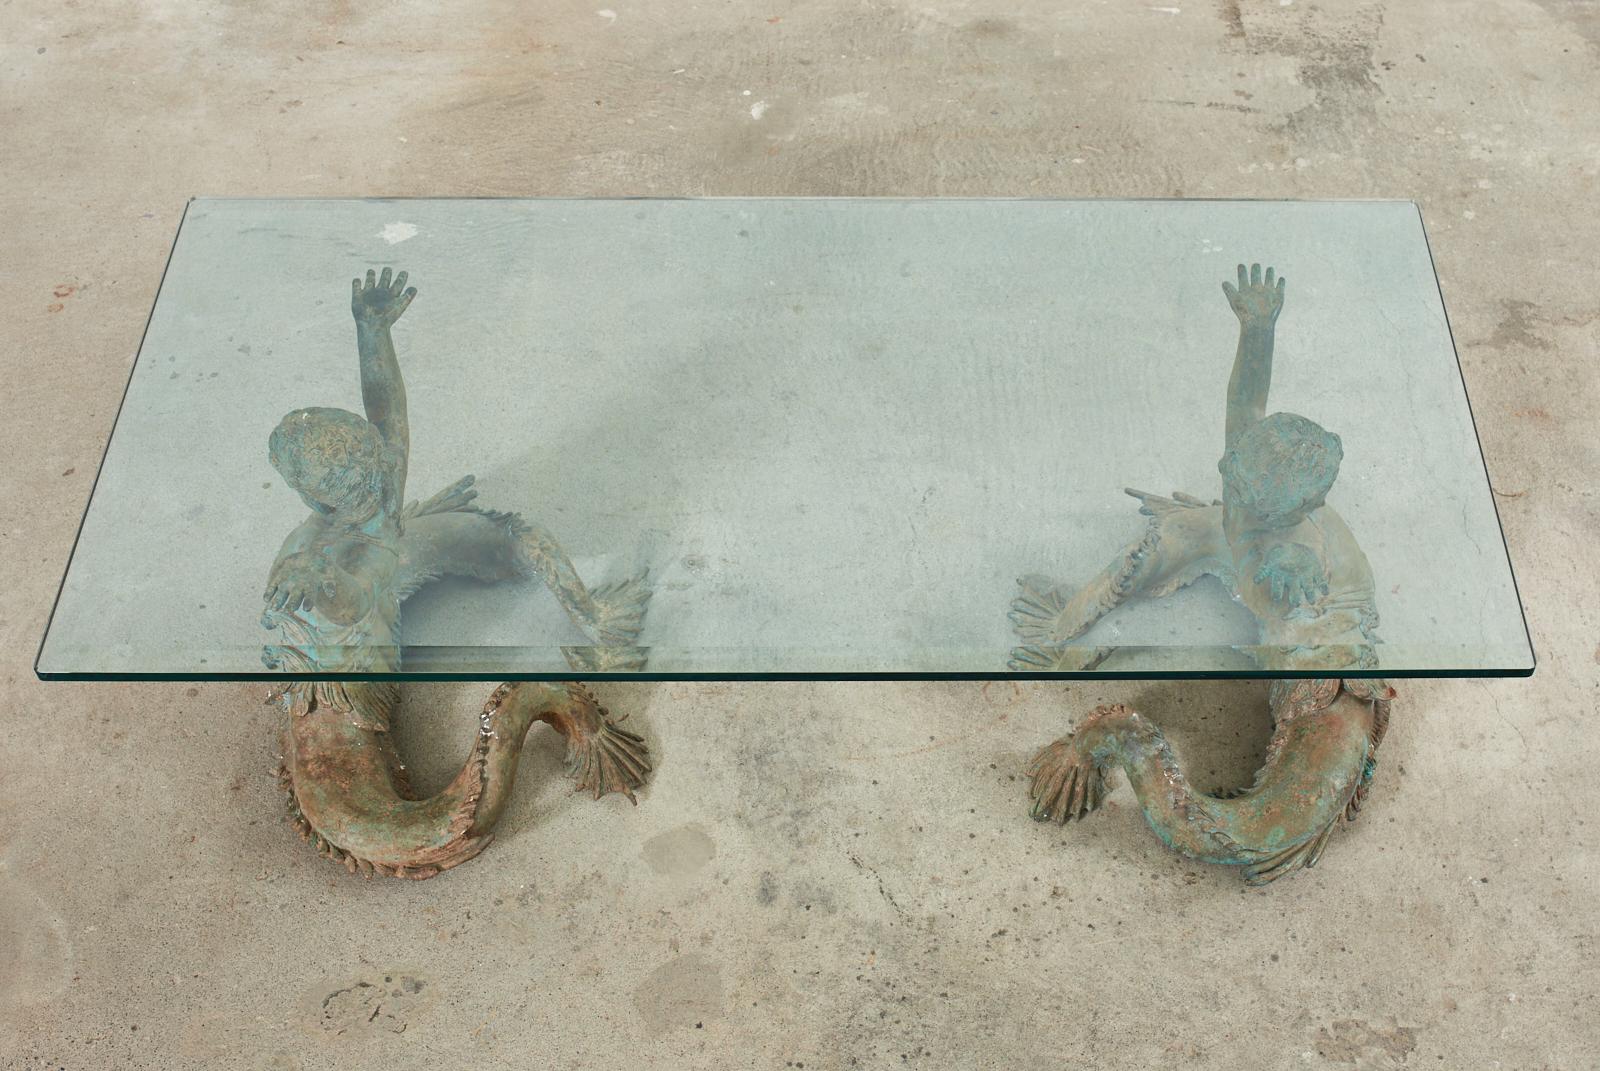 mermaid table